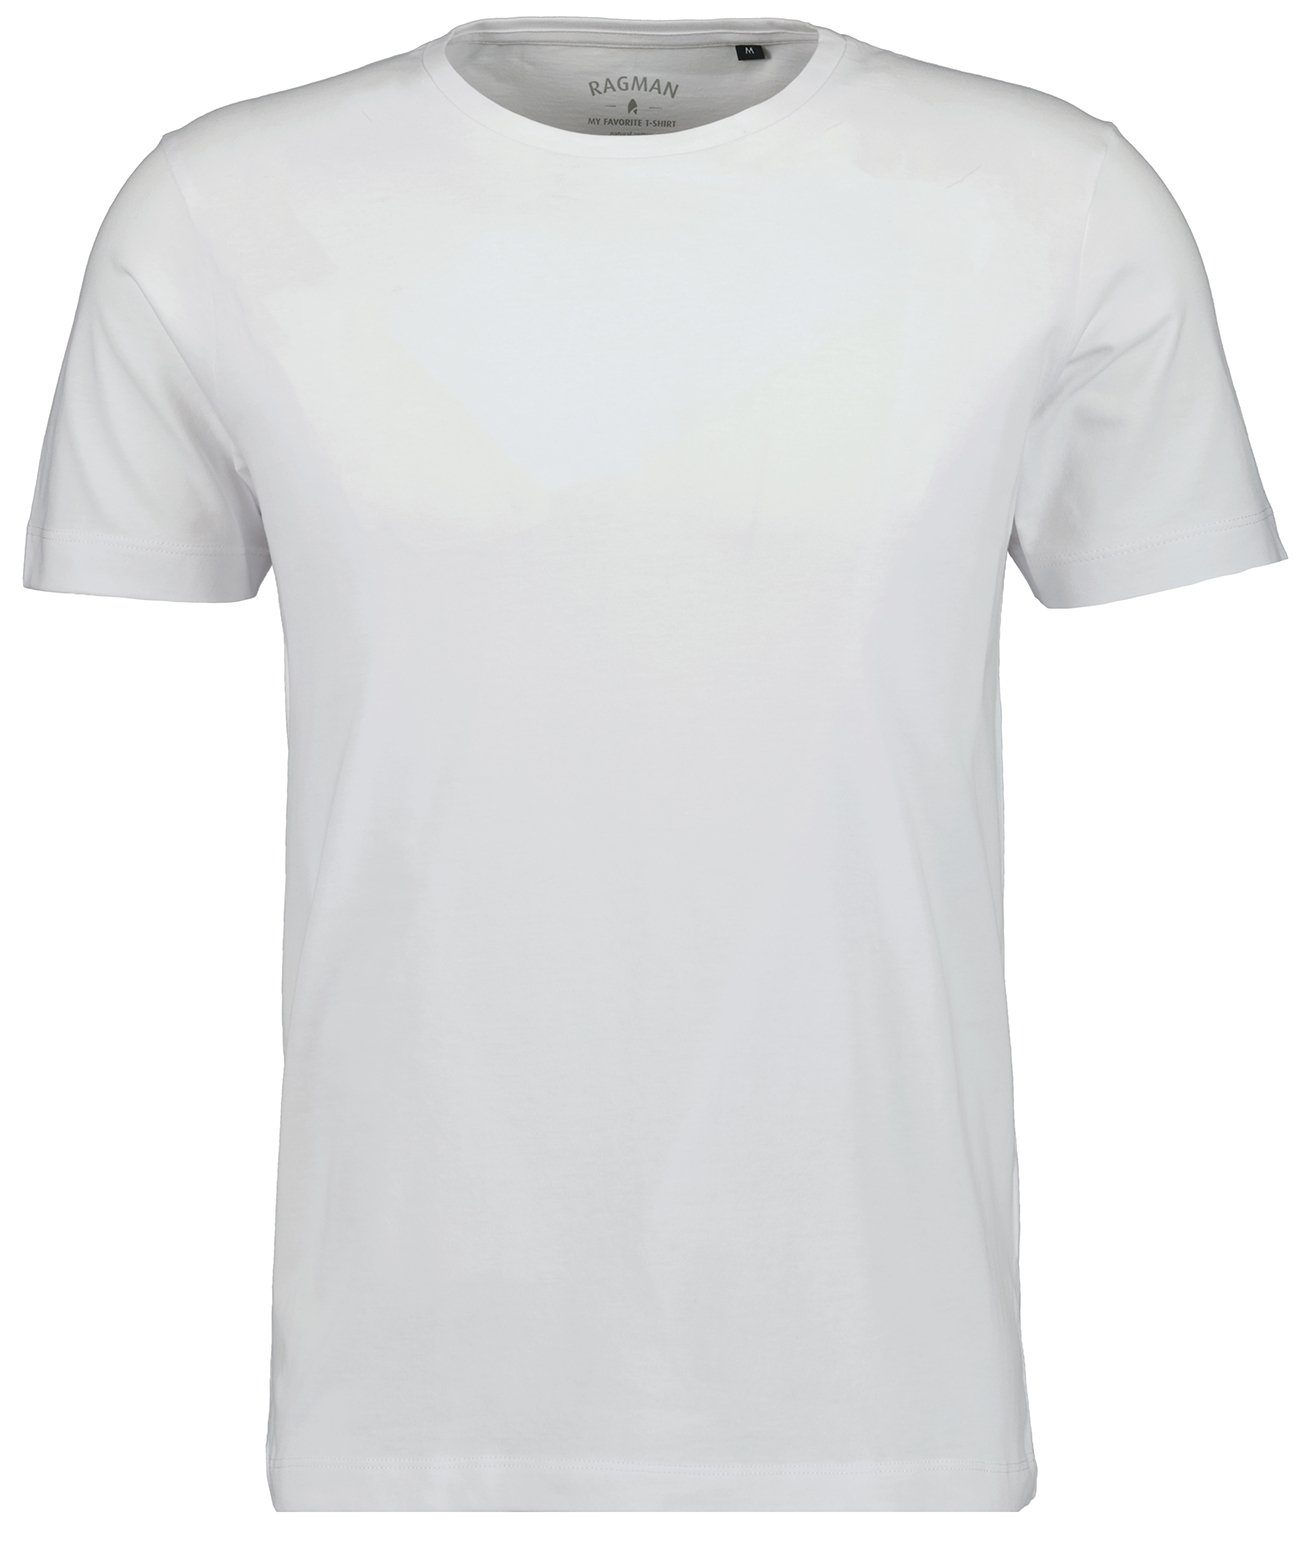 RAGMAN T-Shirt Weiss